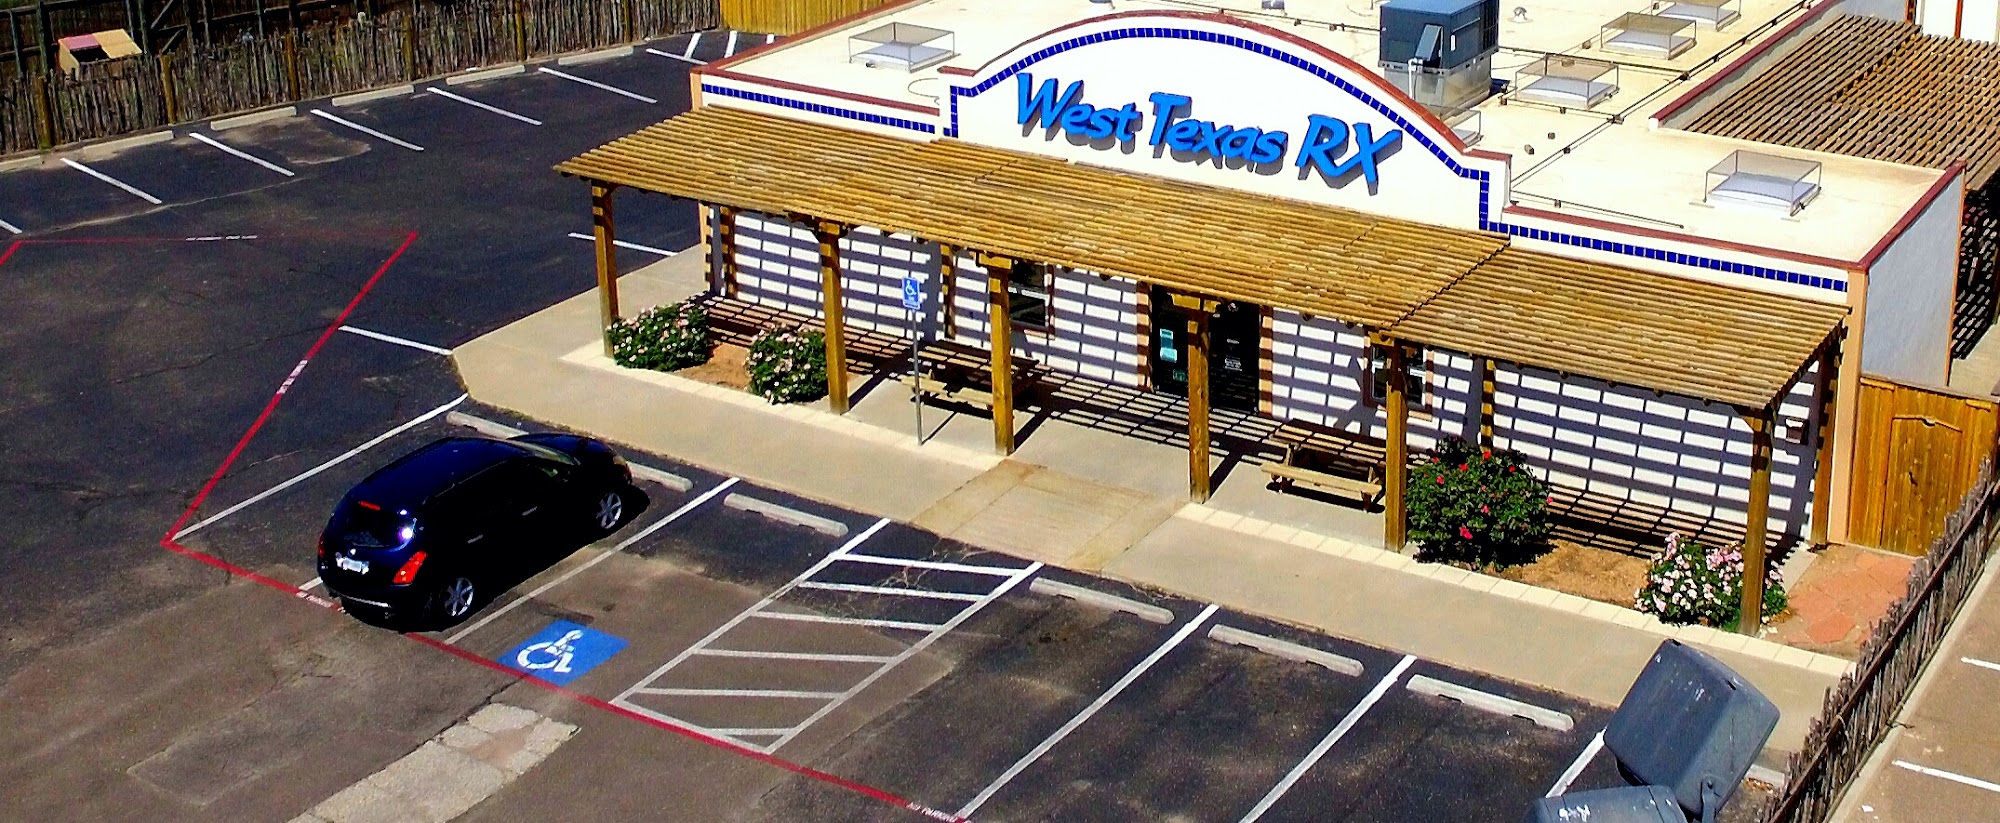 West Texas RX Health Food